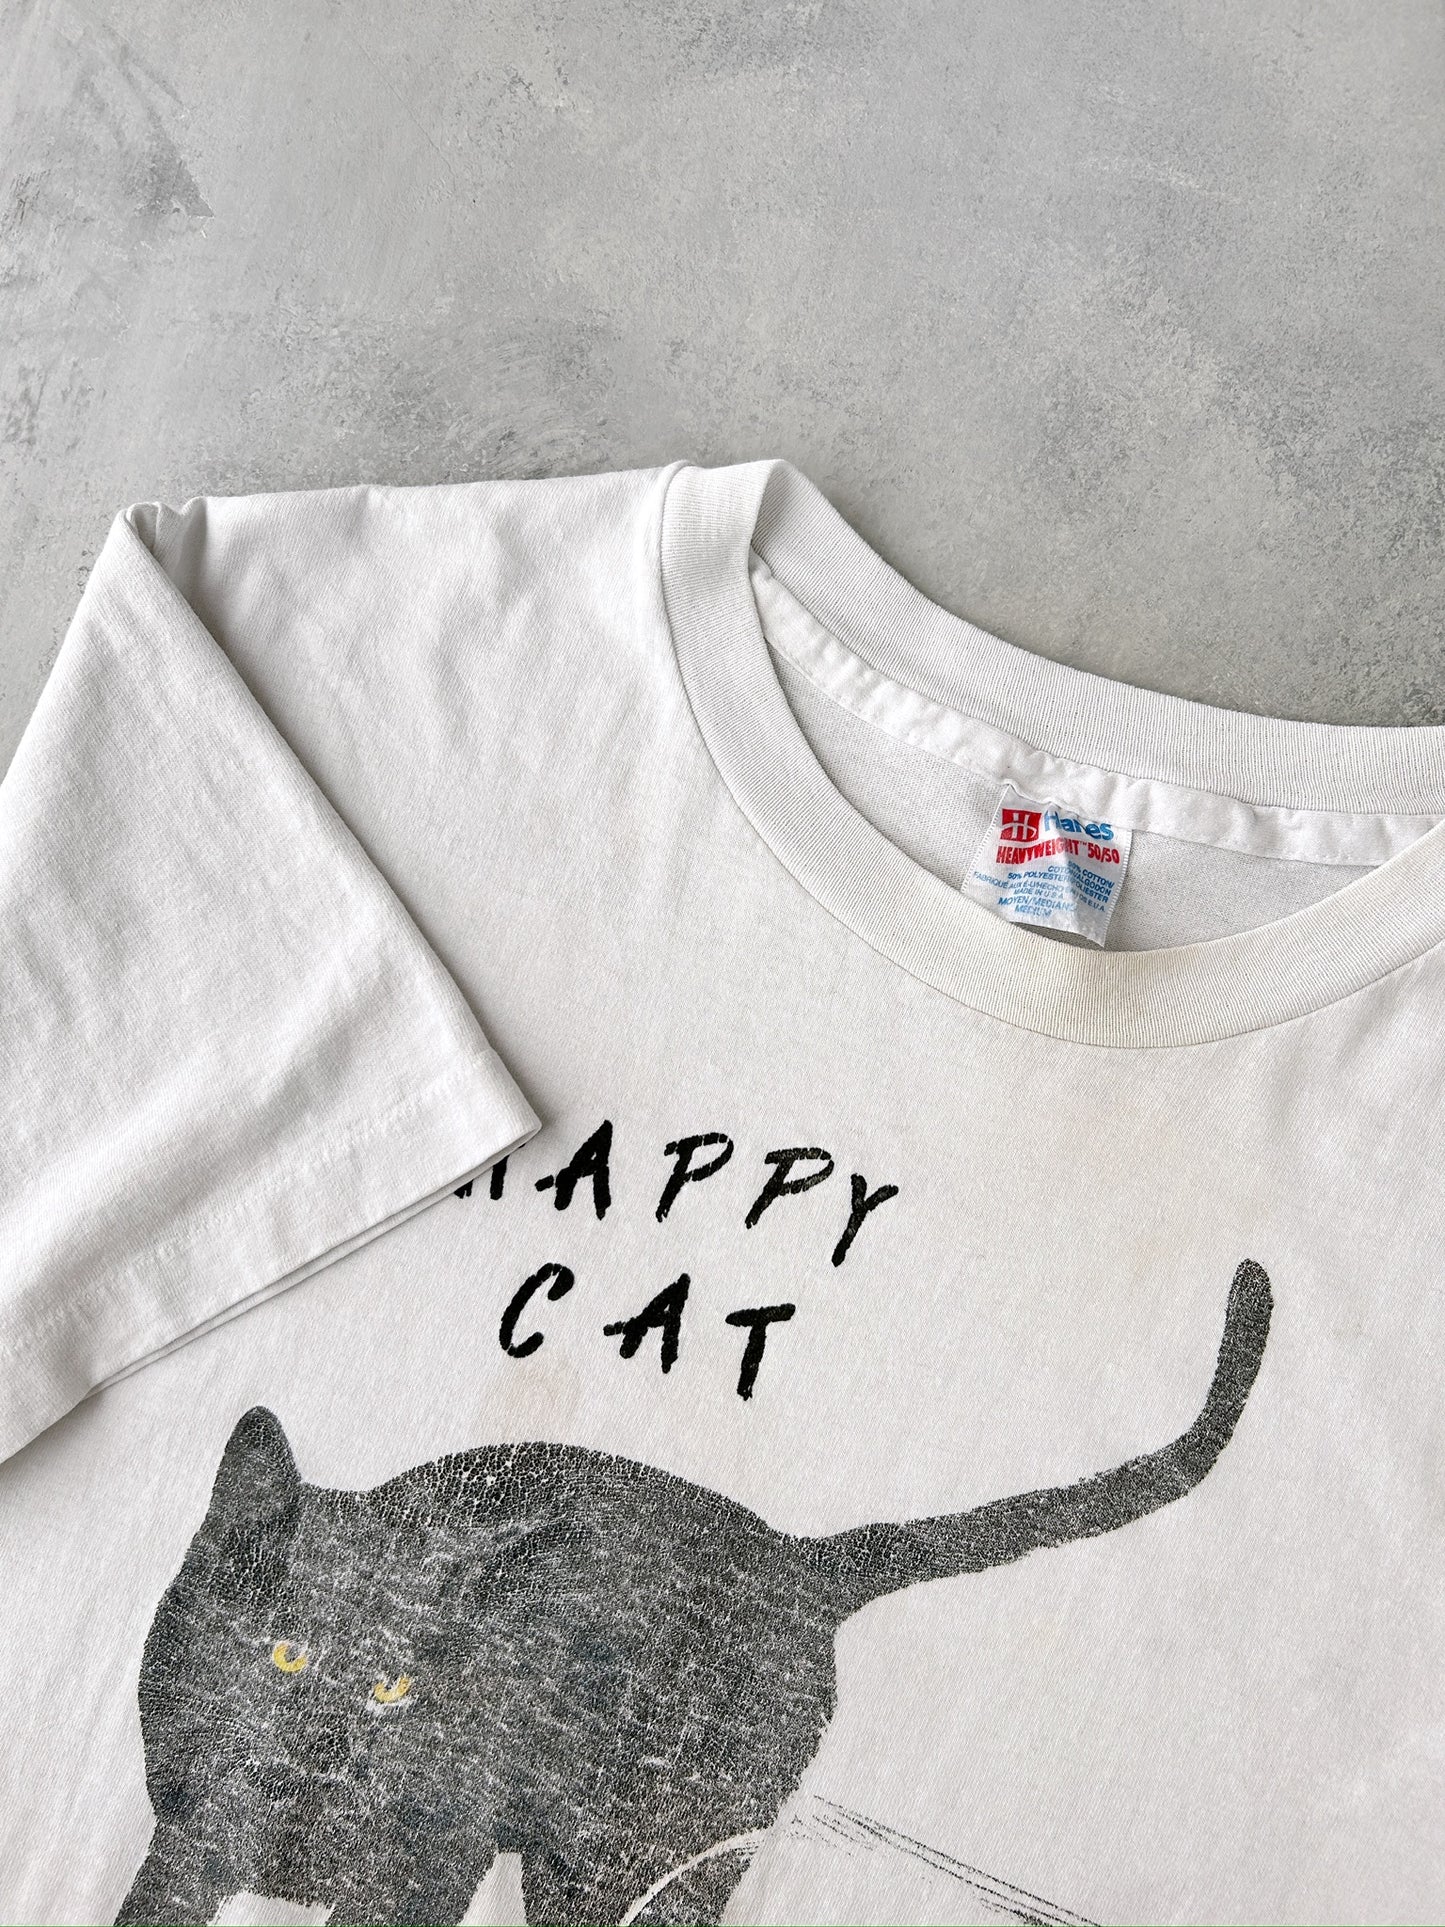 Happy Cat T-Shirt 90's - Medium